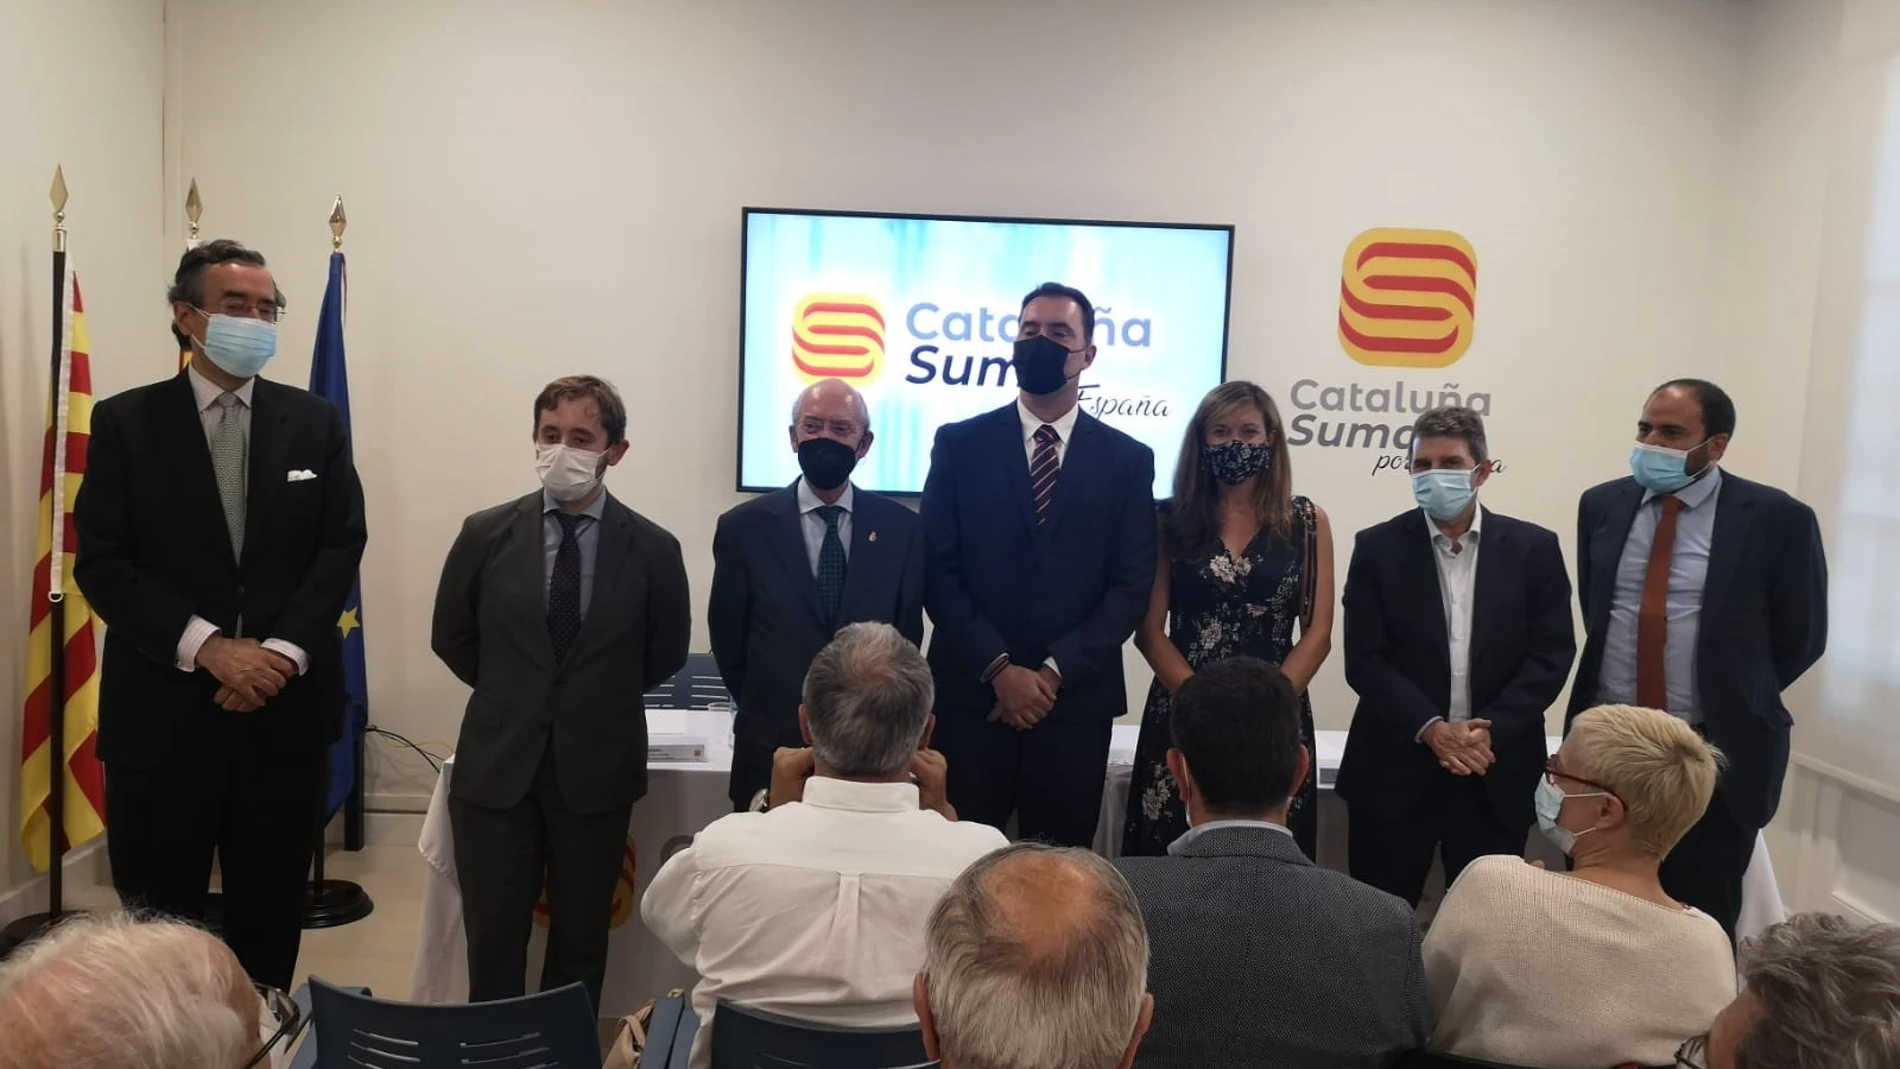 Cataluña Suma por España reunió a los presidentes de Cataluña Suma por España, Impulso Ciudadano y Societat Civil Catalana.